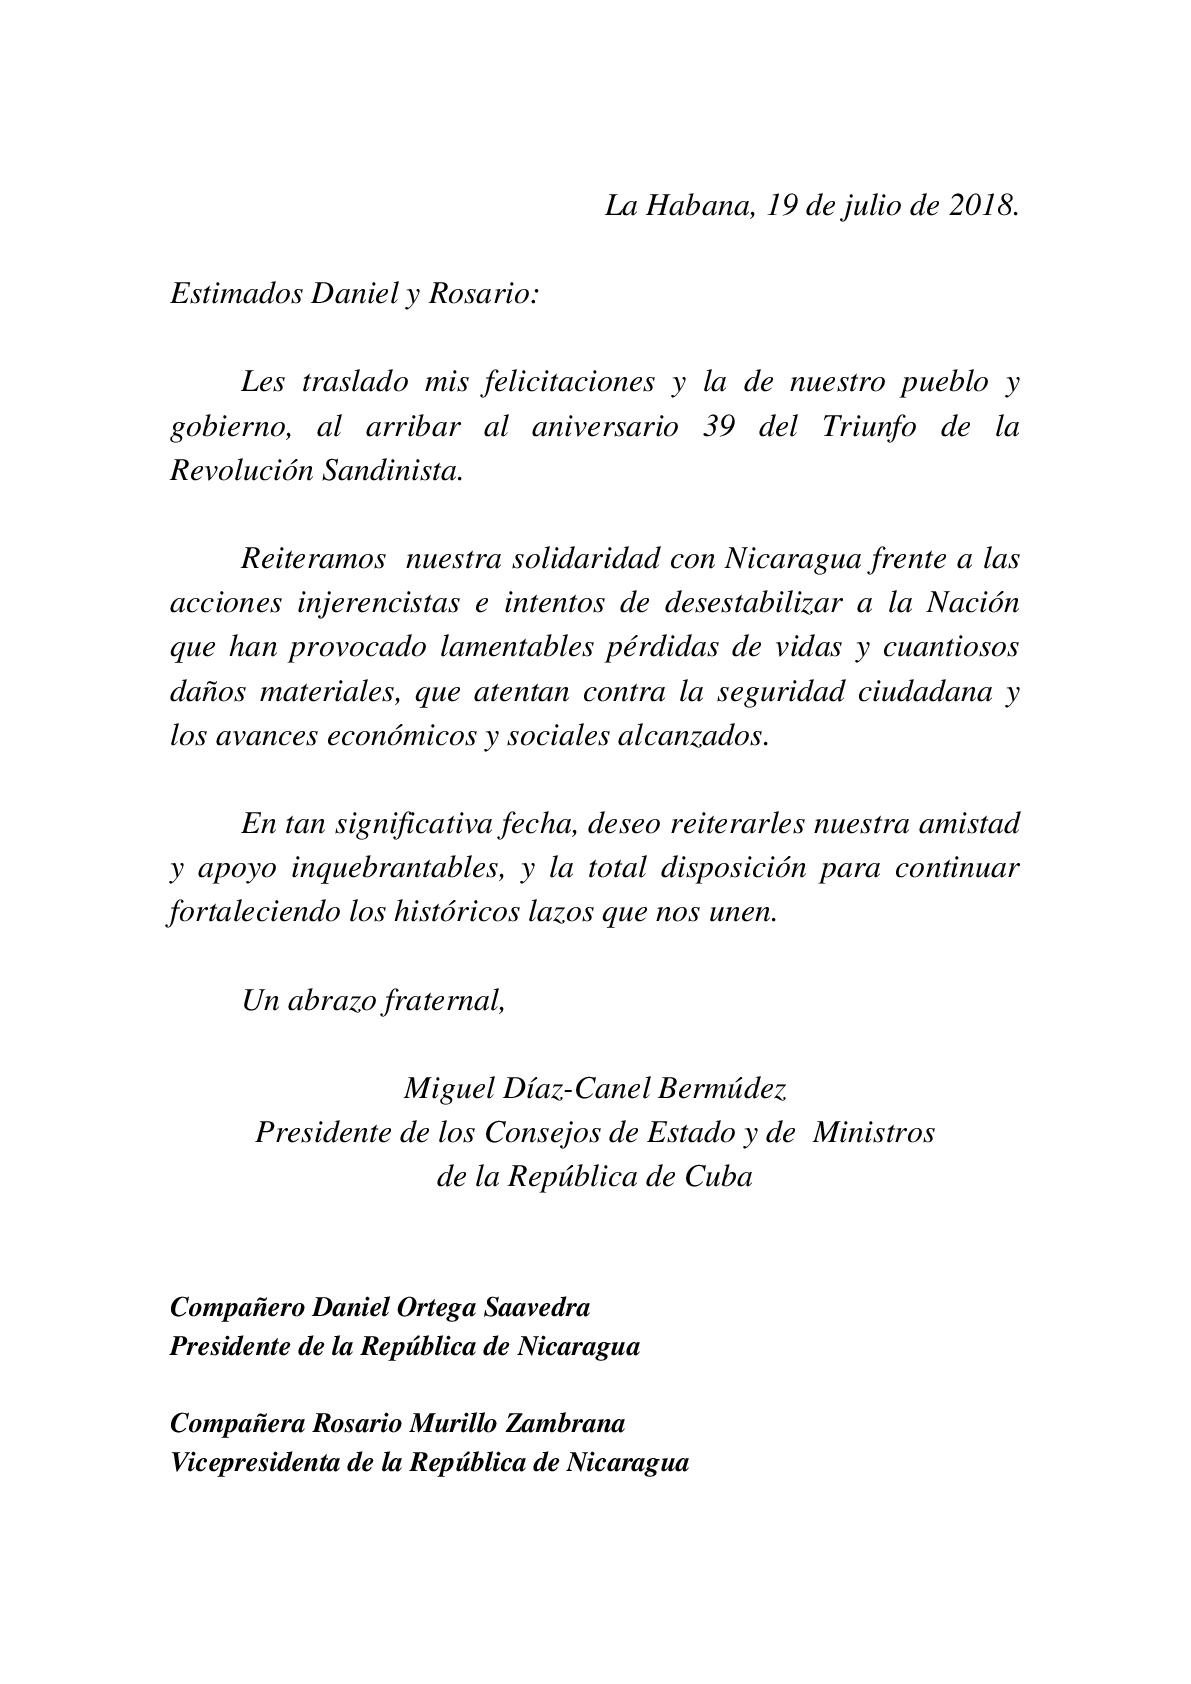 Mensajes del General Raúl Castro y Presidente Miguel Díaz-Canel felicitando el 39 aniversario de la Revolución Sandinista